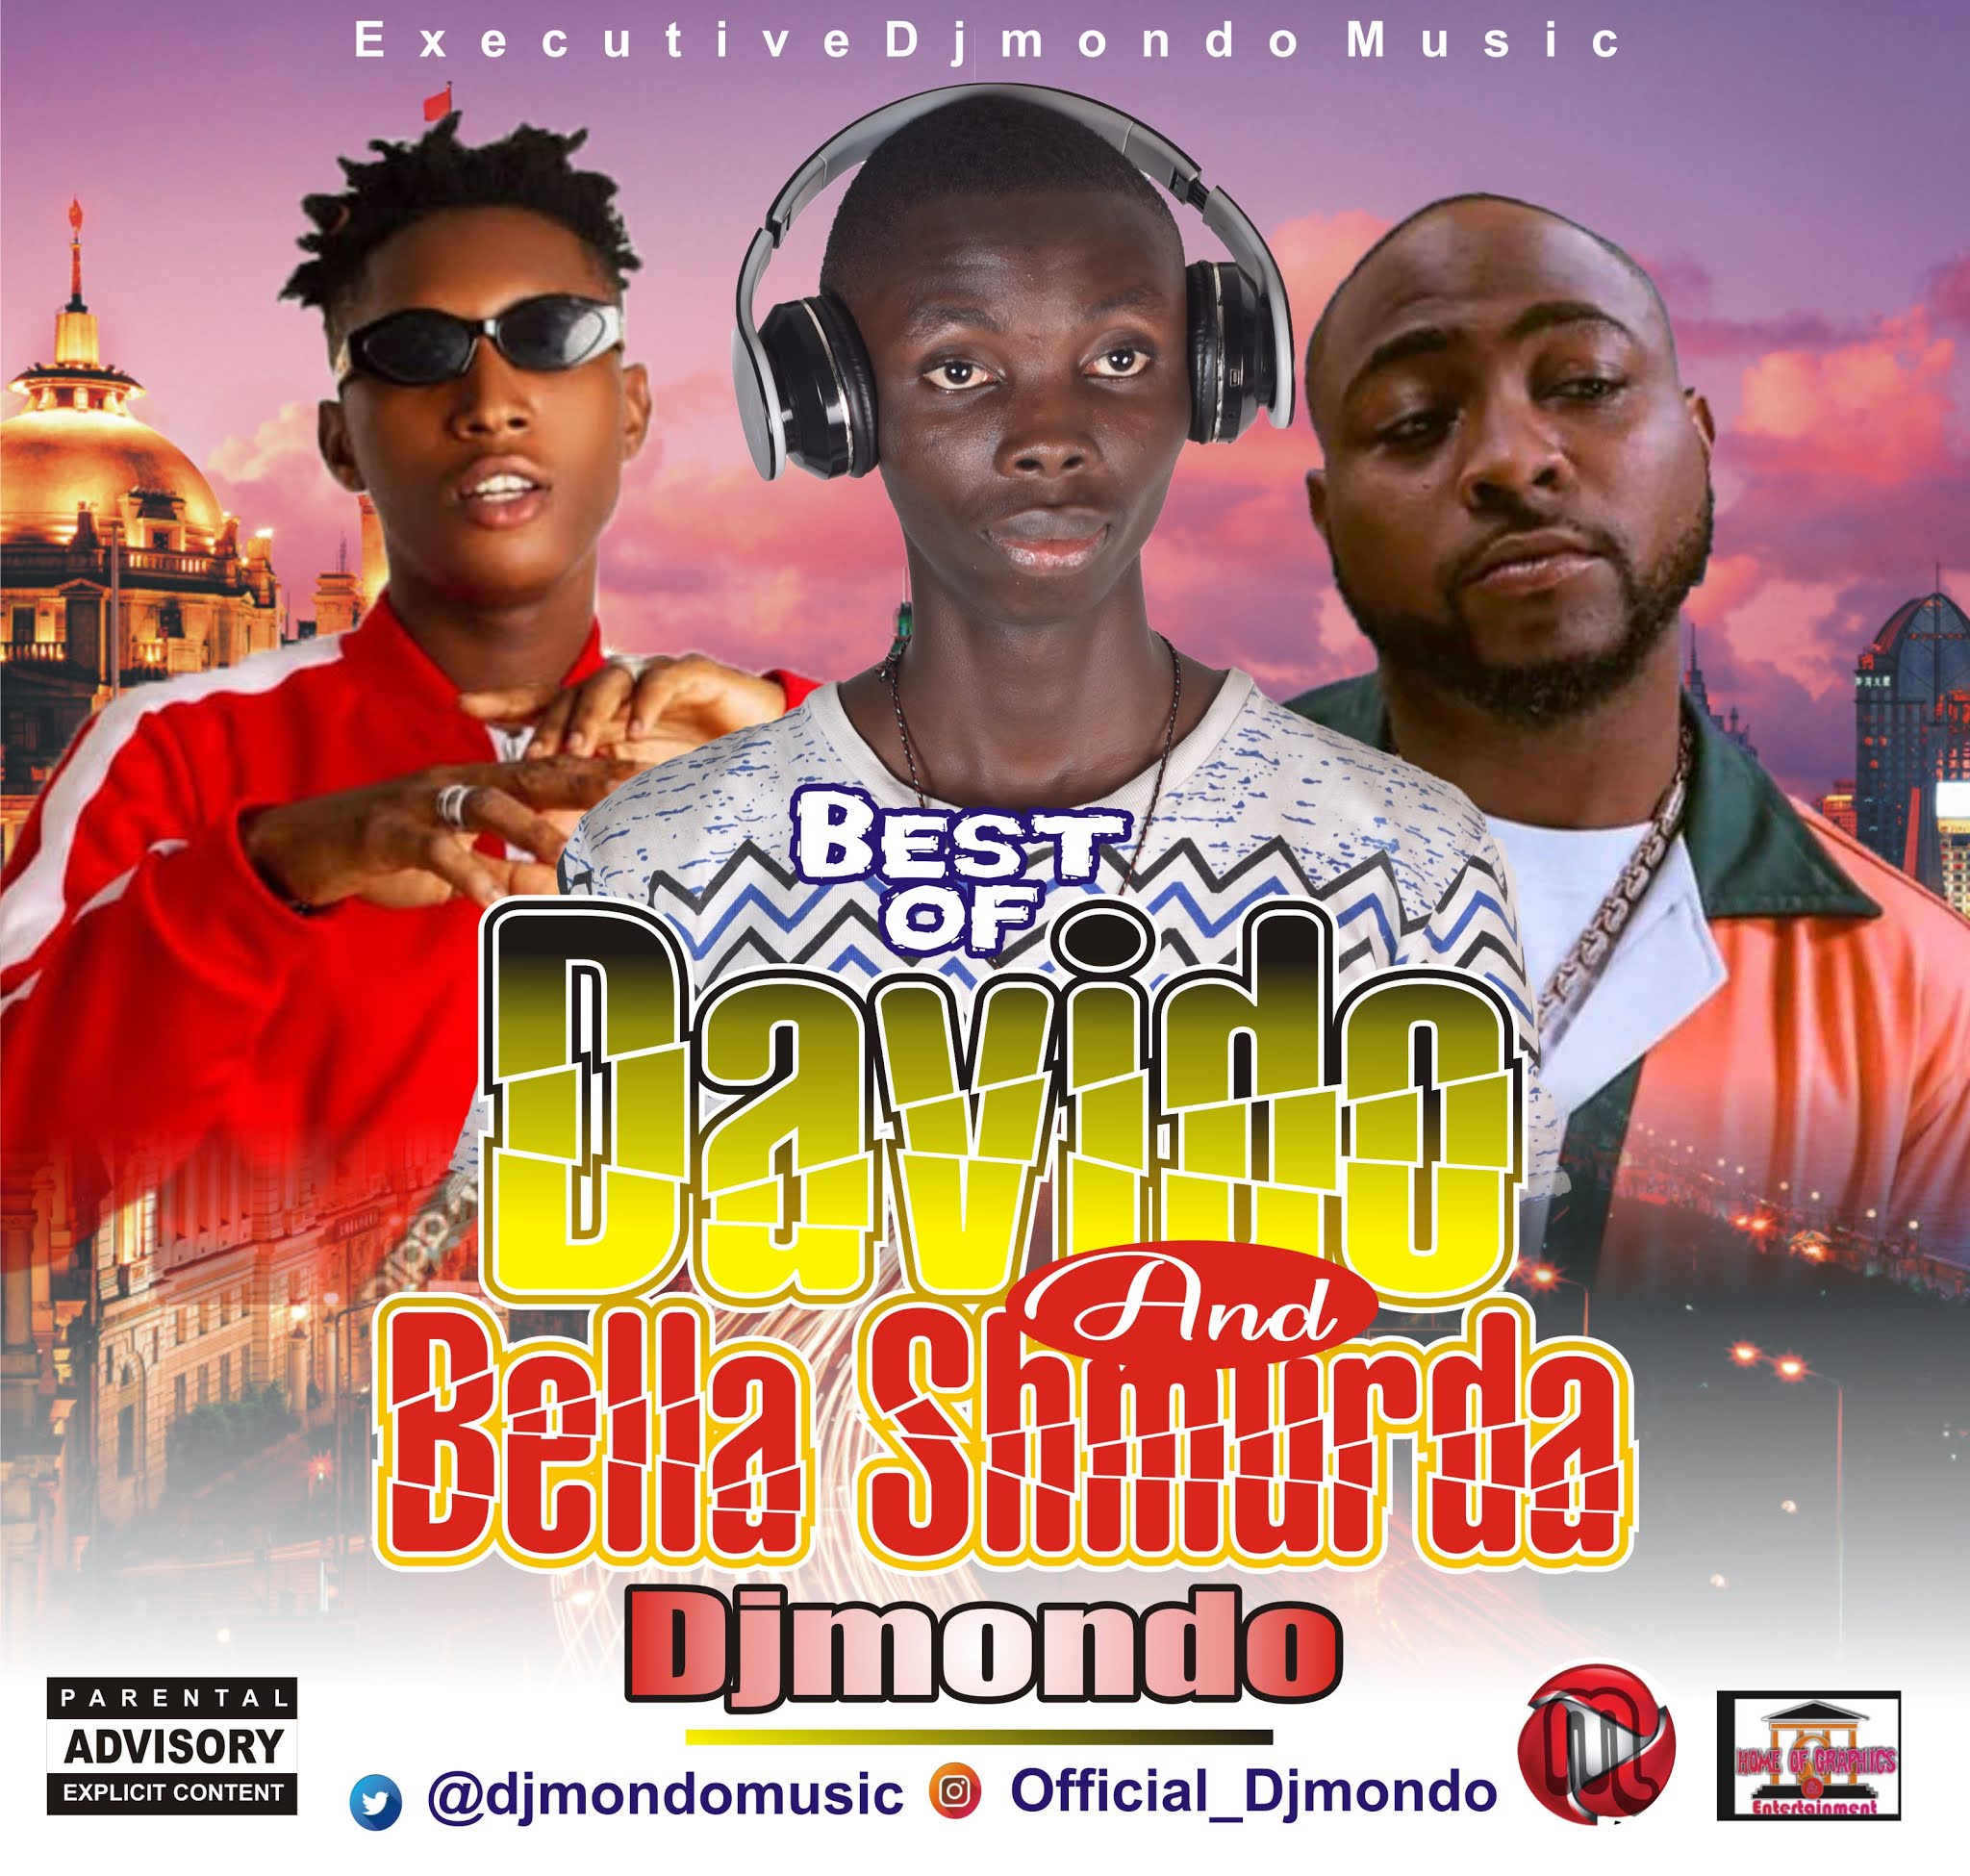 "Best of Davido & Bella Shmurda - DjMondo"